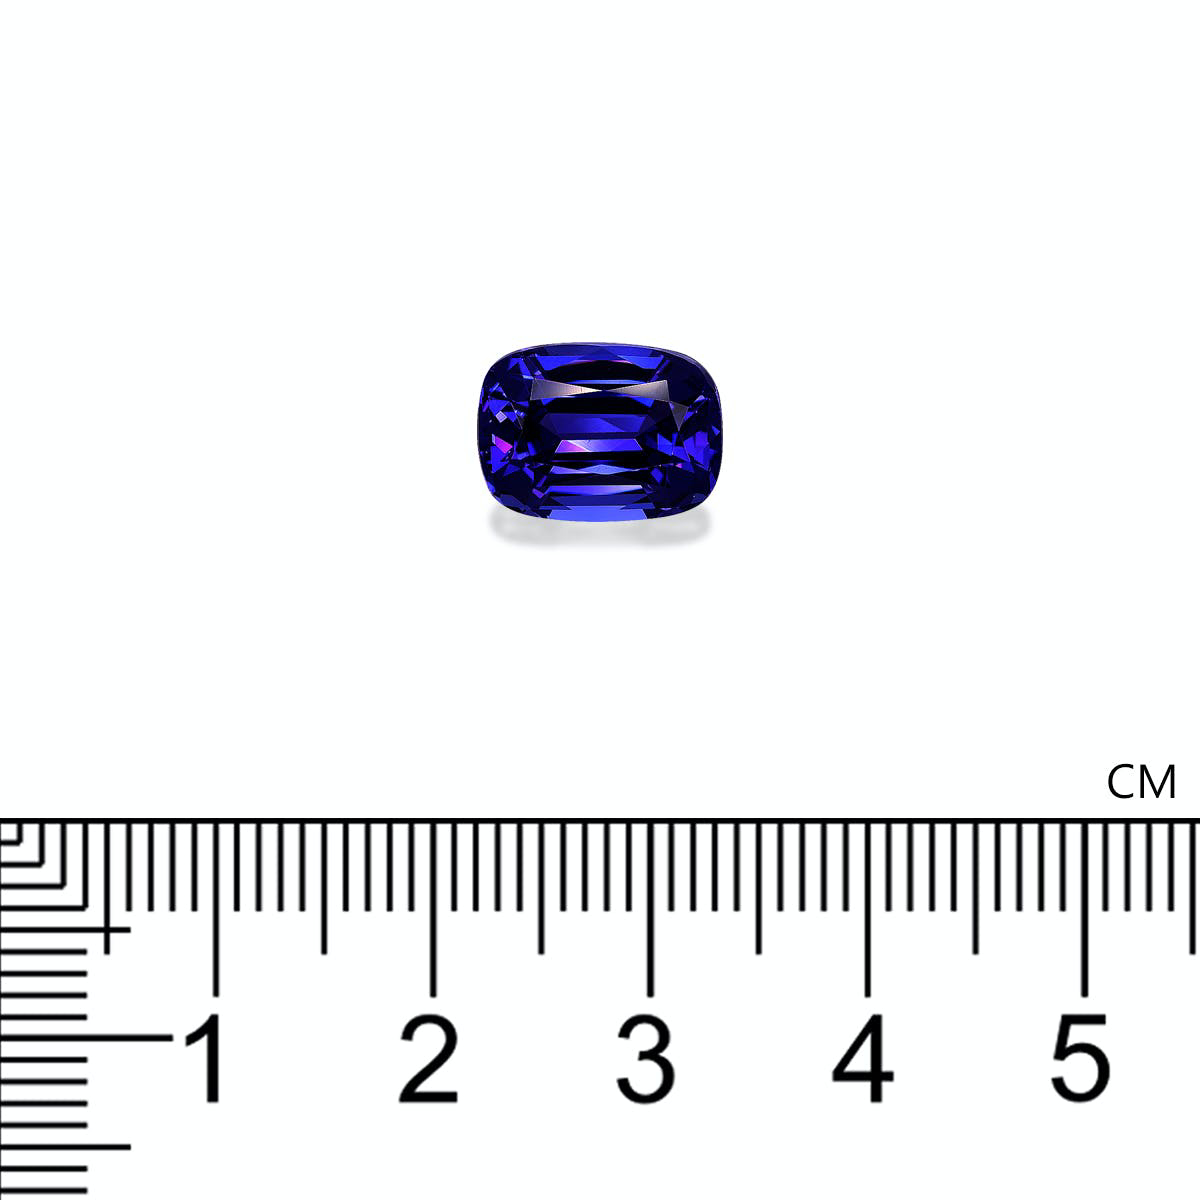 D-Block Blue Tanzanite 4.39ct (TN0852)